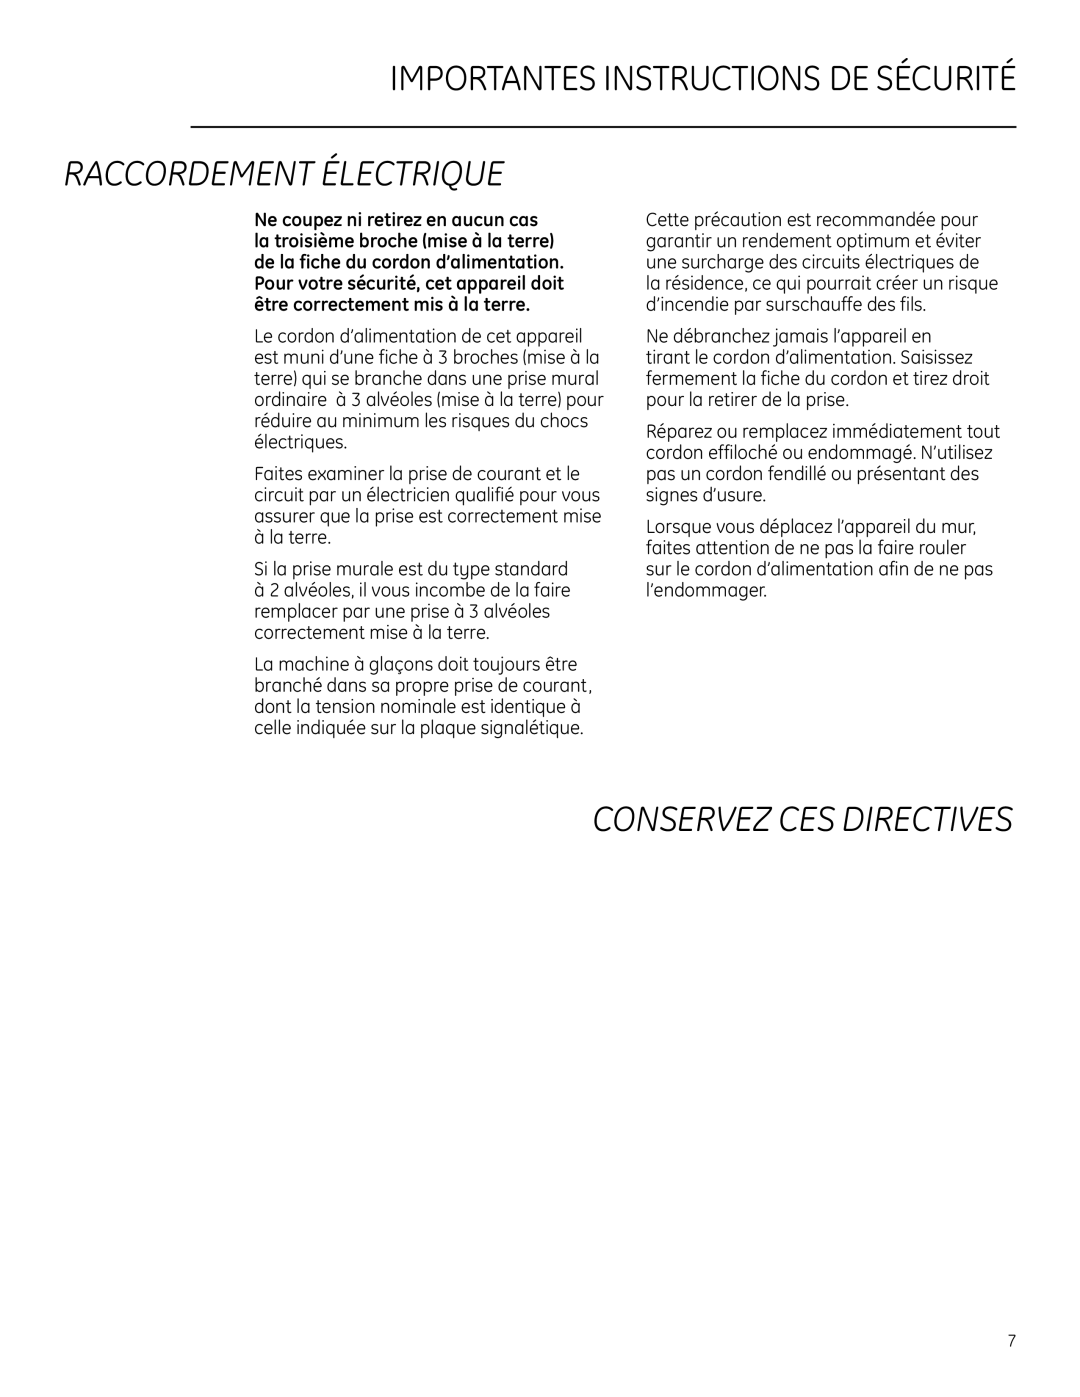 GE Monogram ZDWI240, ZDWR240 Raccordement Électrique, Importantes Instructions De Sécurité, Conservez Ces Directives 